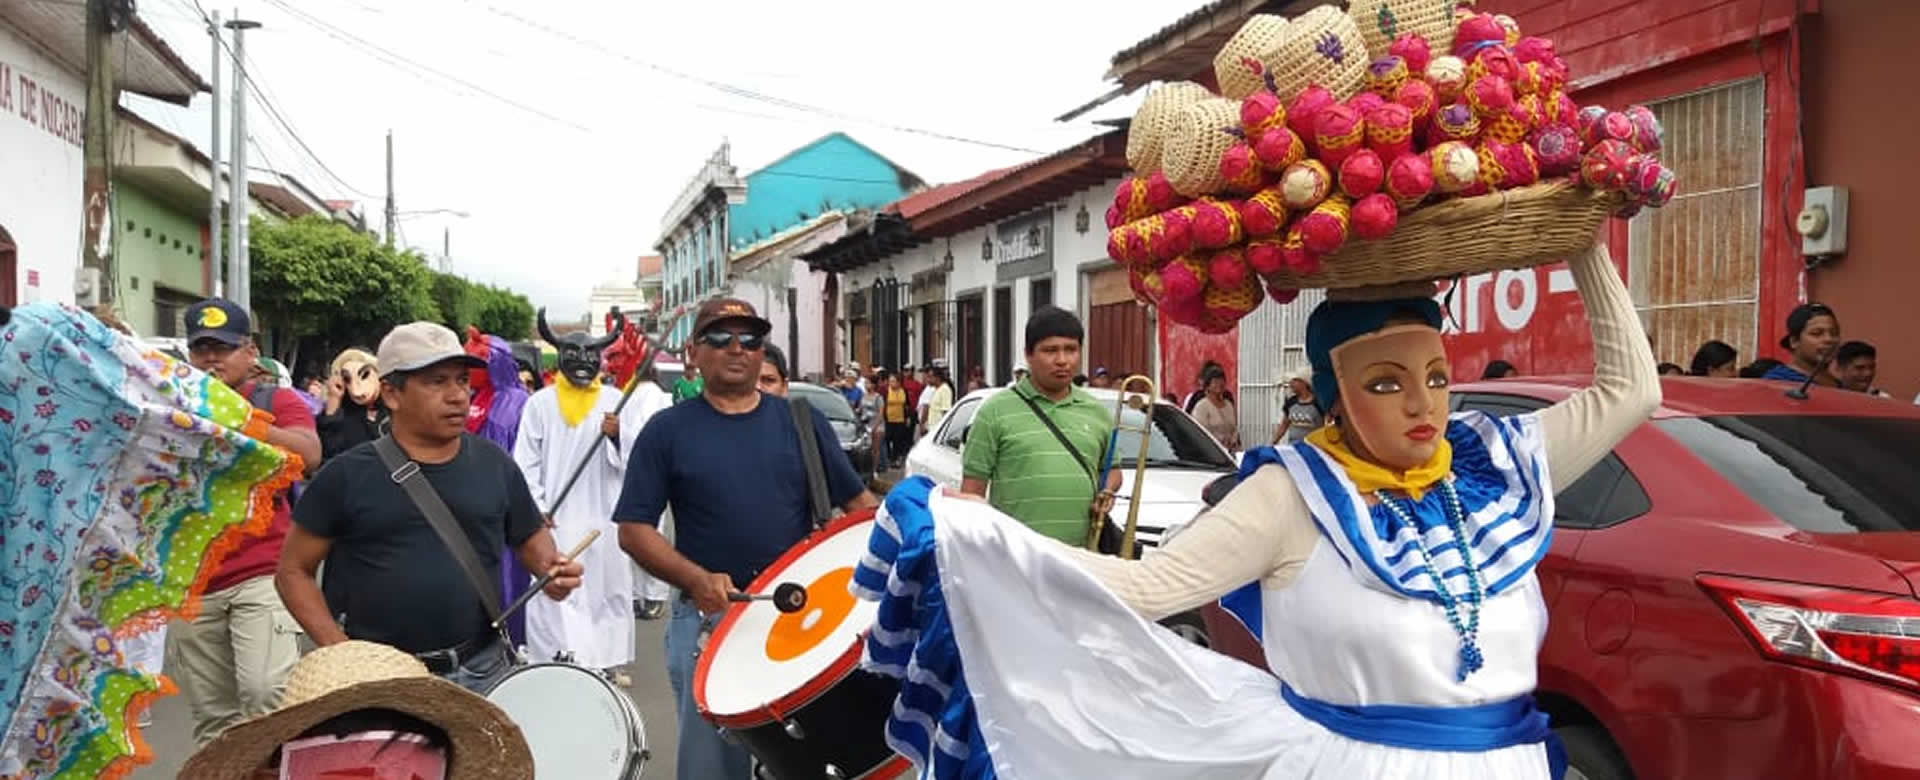 La Cuidad de las Flores dedica sus fiestas culturales a San Jerónimo Doctor